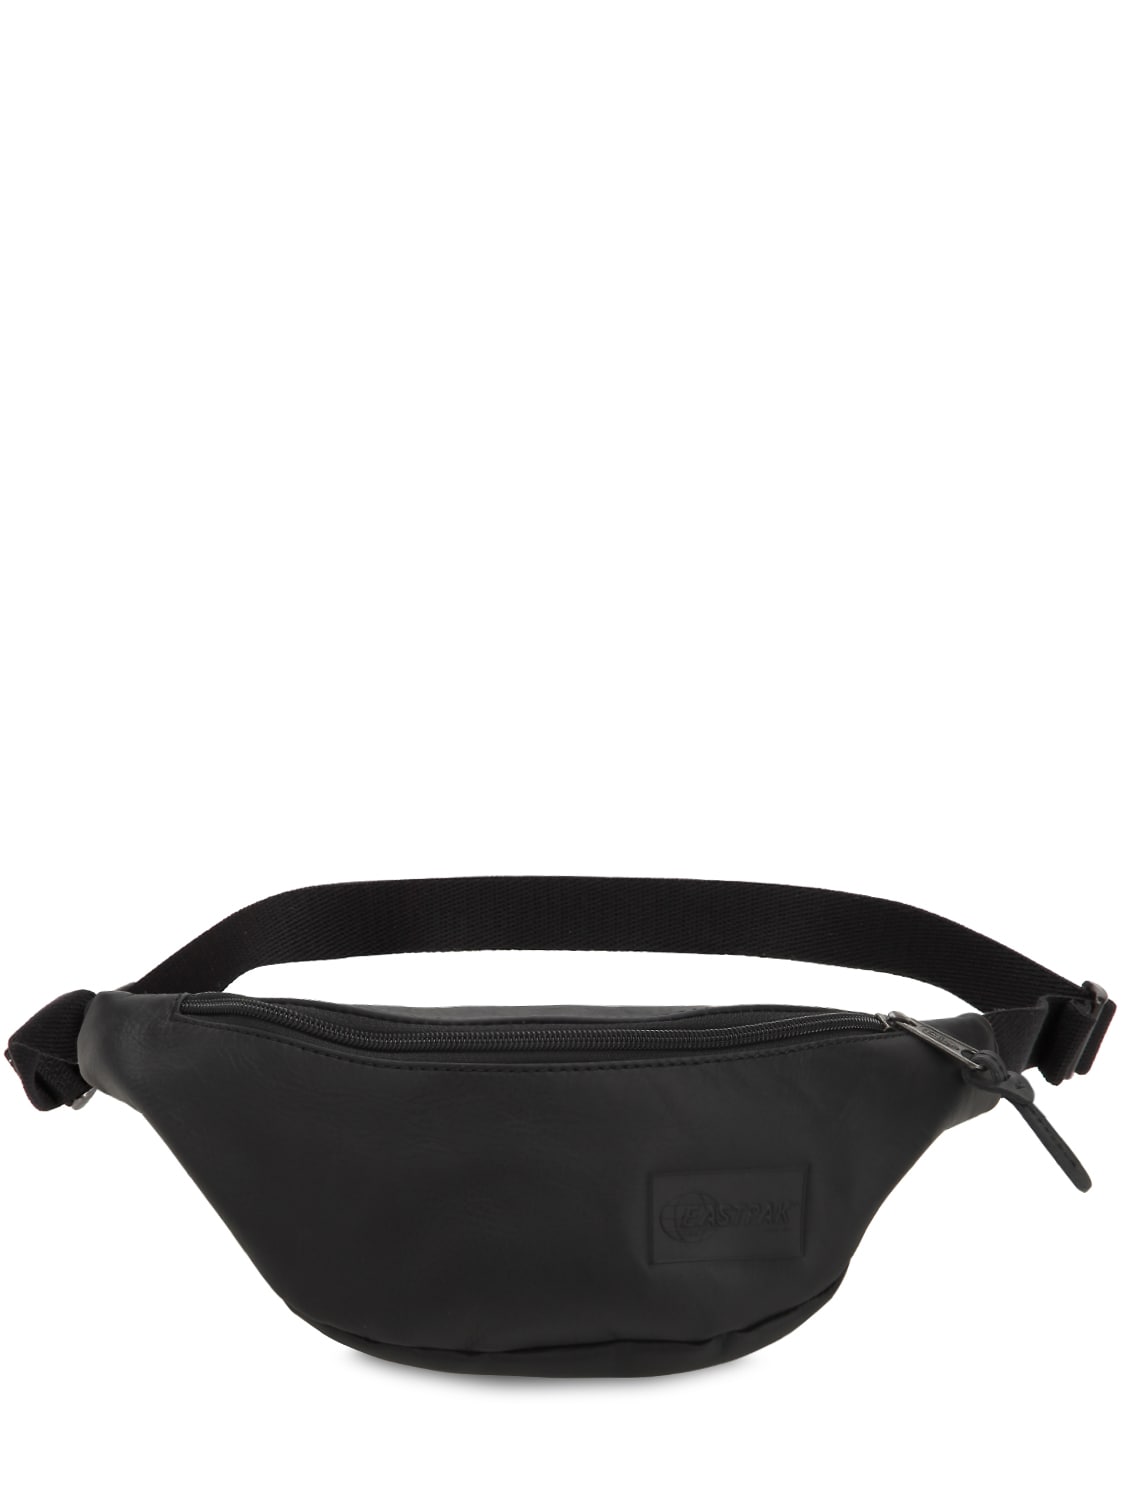 Eastpak 2l Springer Leather Belt Bag In Black